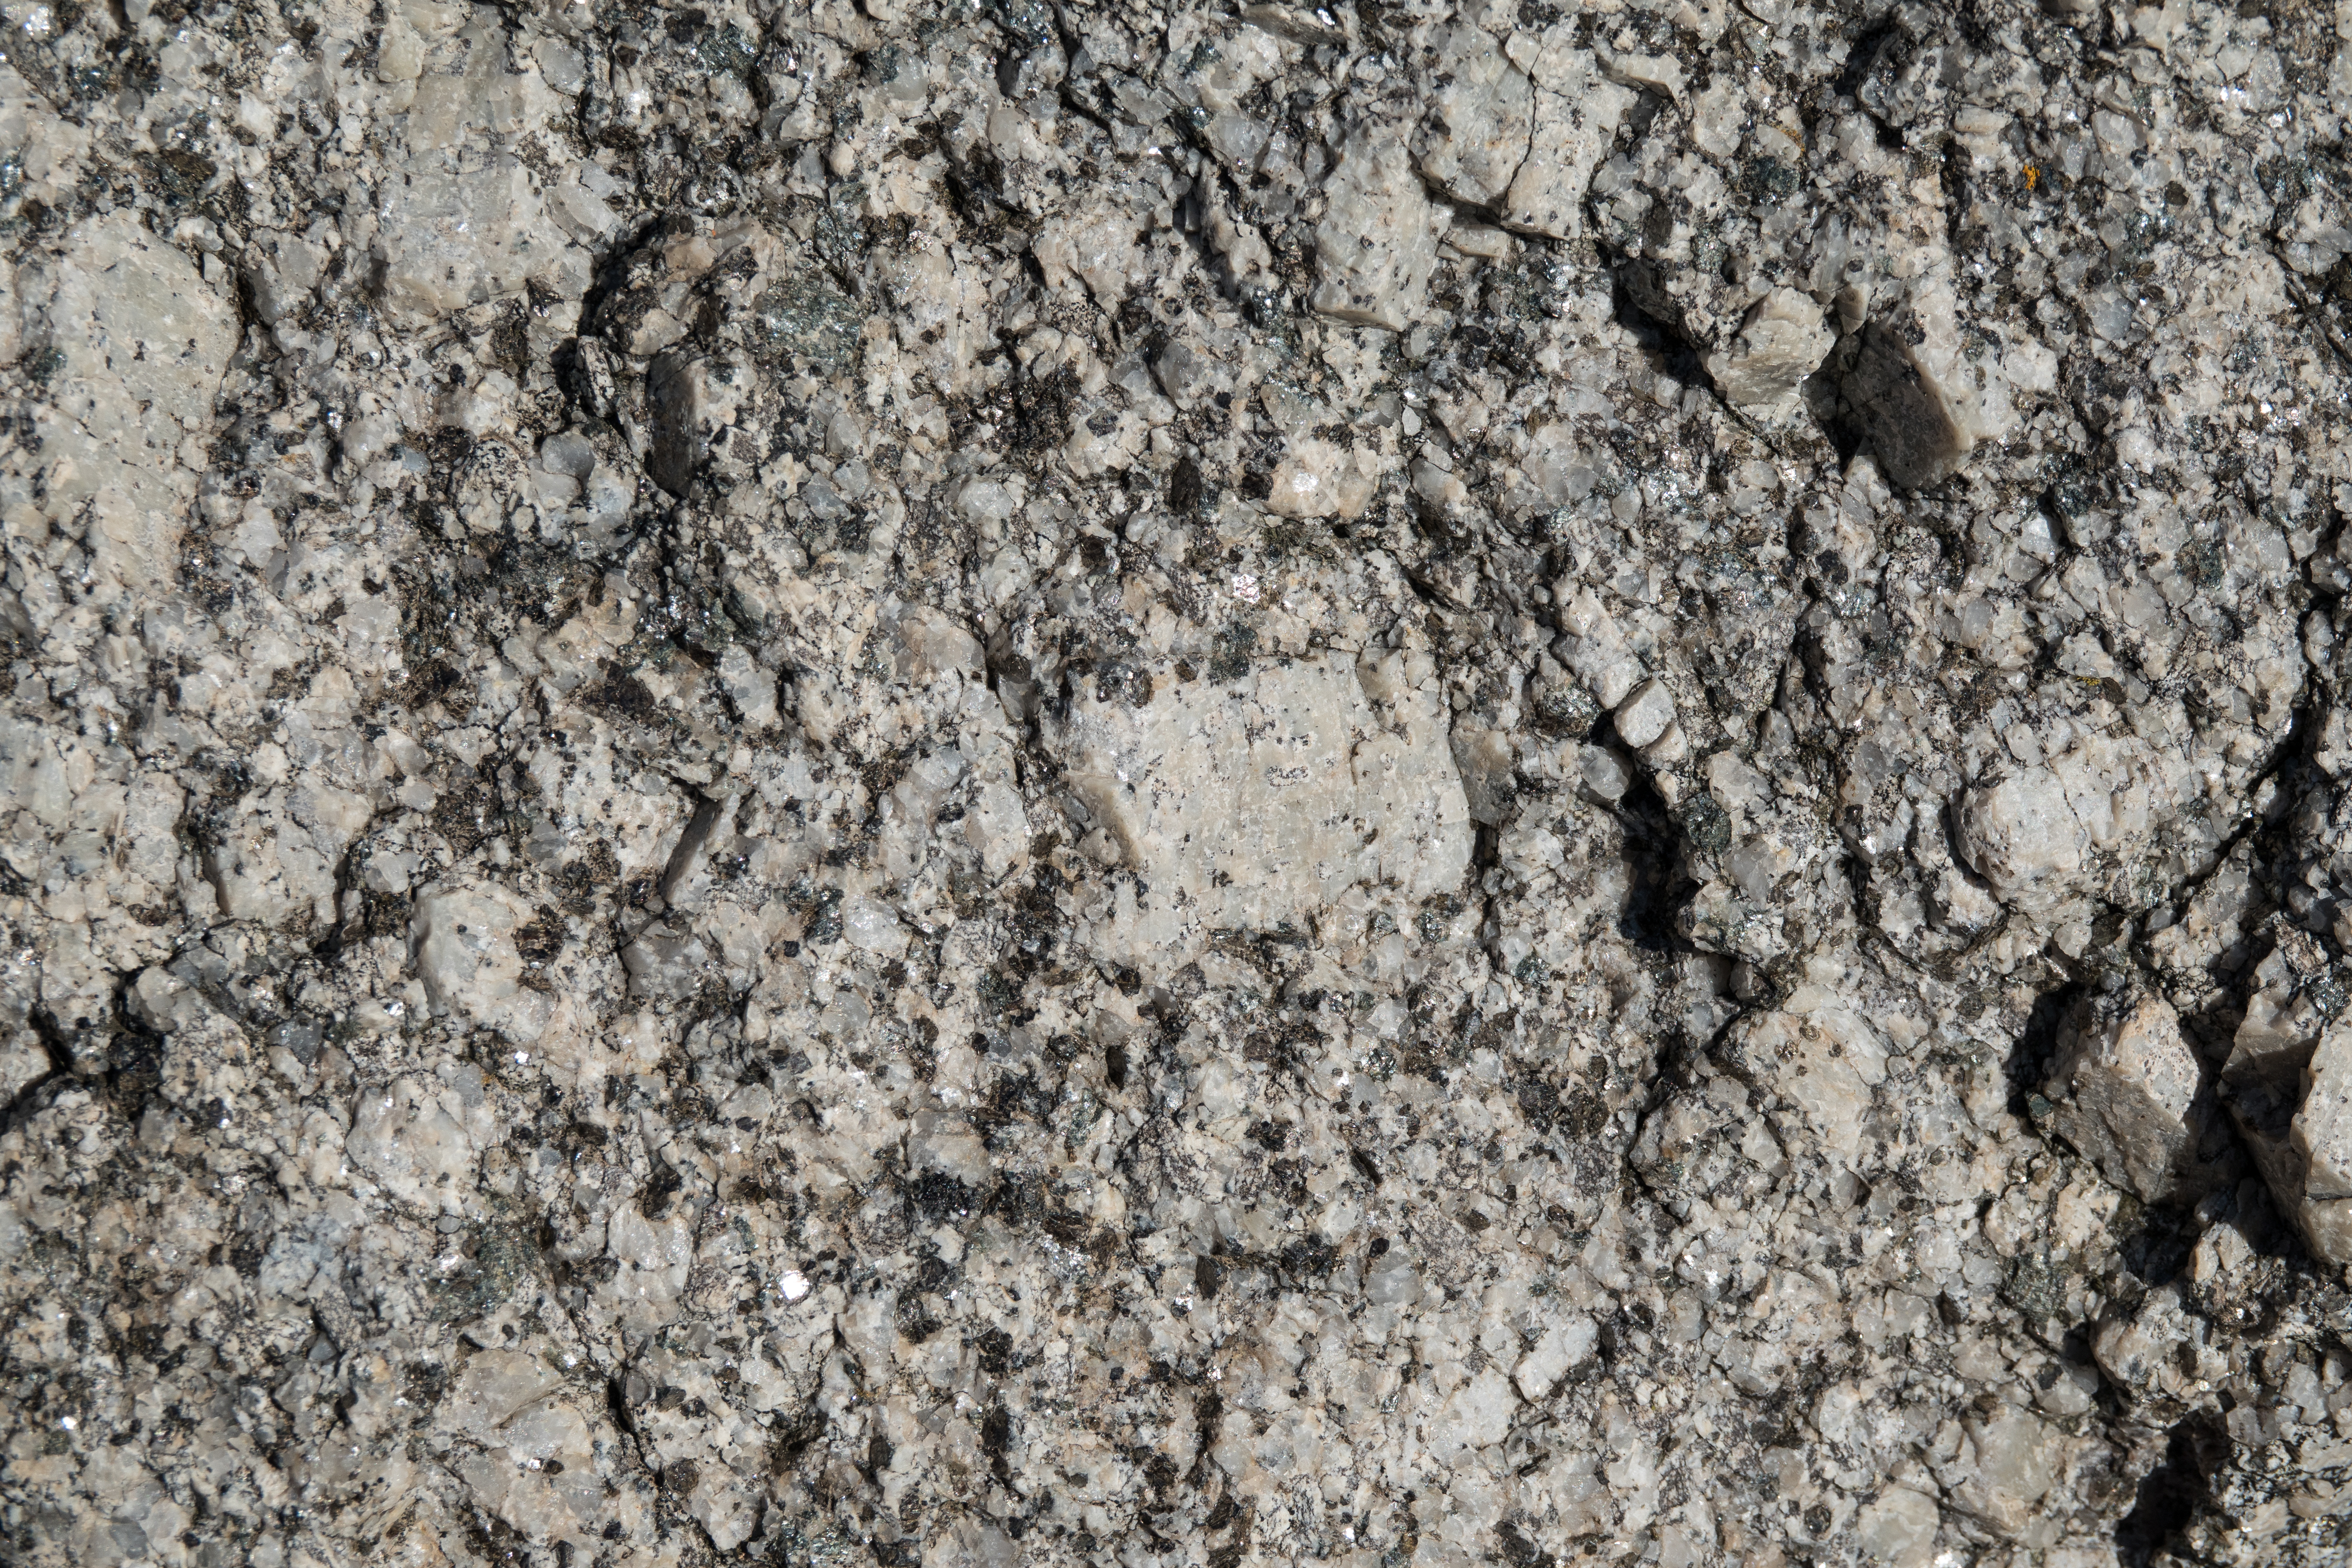 Granite outcrop photo